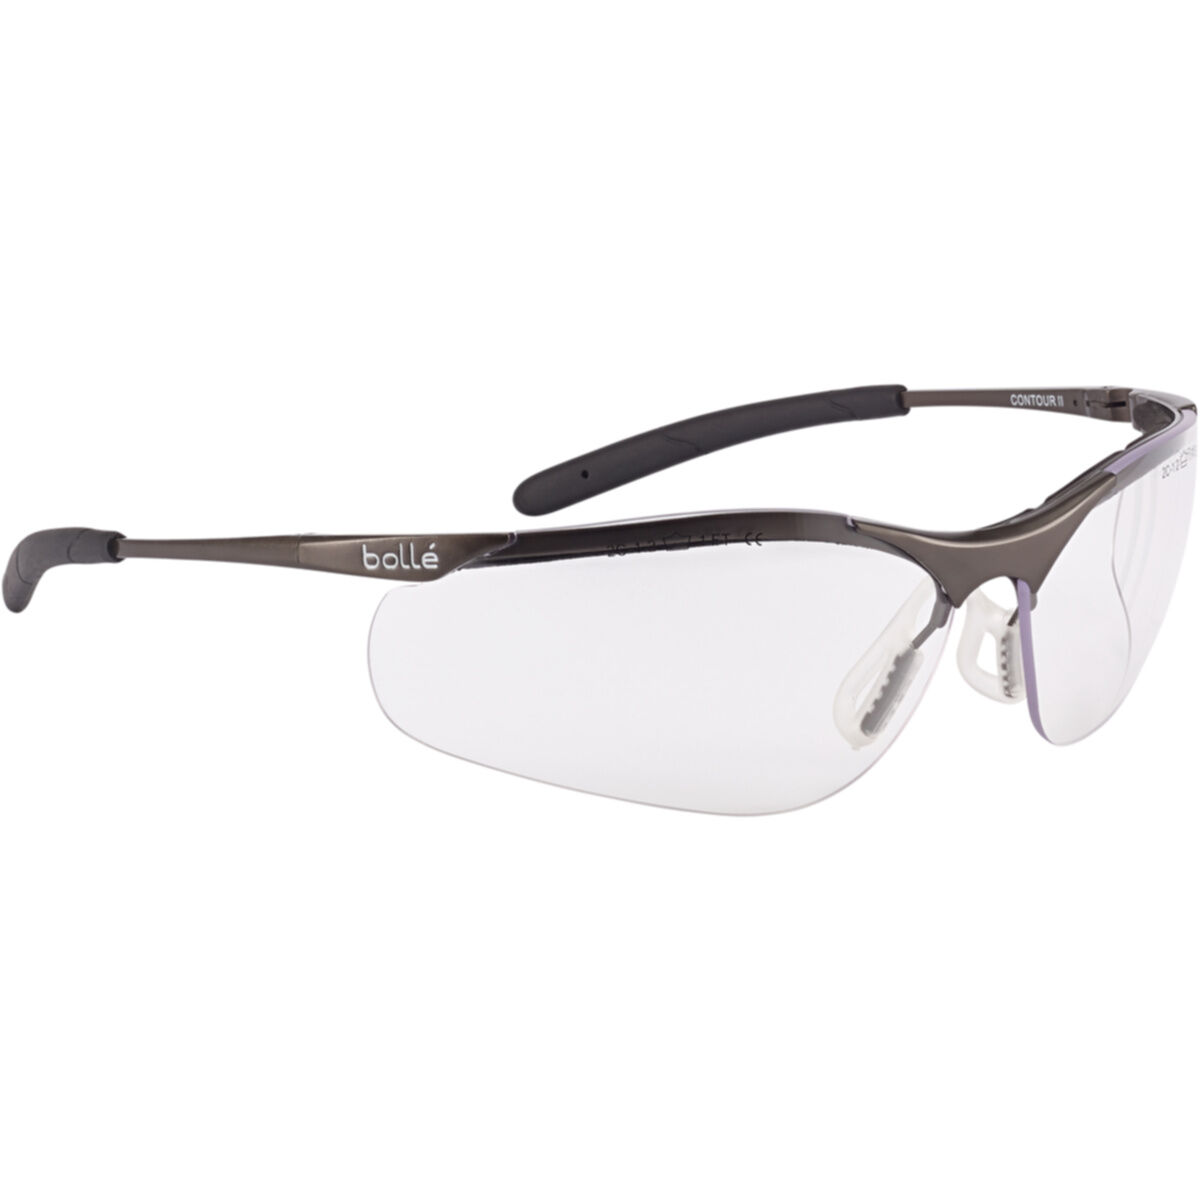 Contour - Bollé Schutzbrille anti-kratz & anti-beschlag mit TIPGRIP-Bügel transparent 